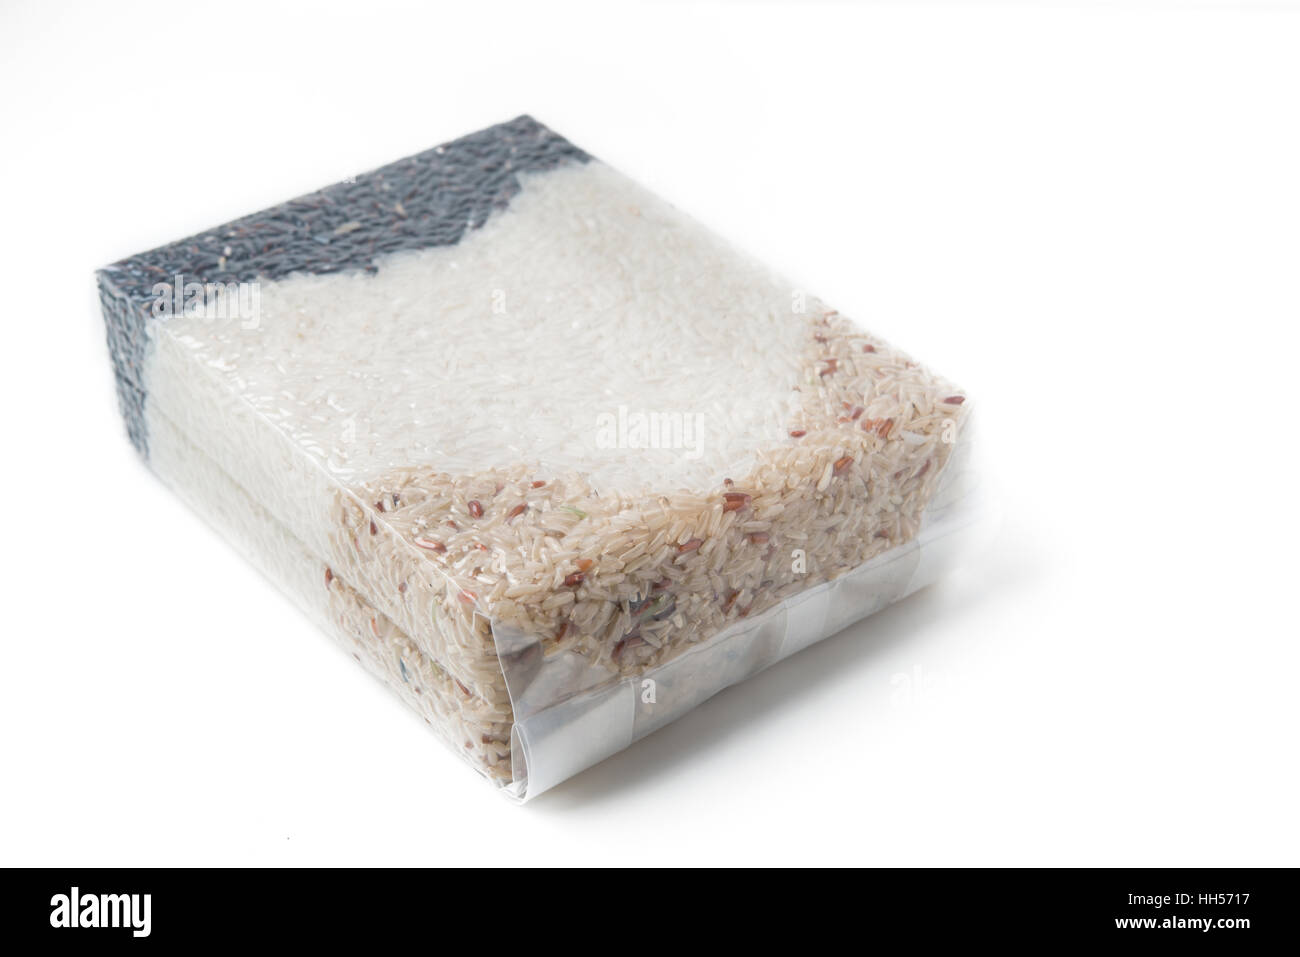 Arroz Jazmín y arroz integral y arroz bayas en bolsa de vacío Foto de stock